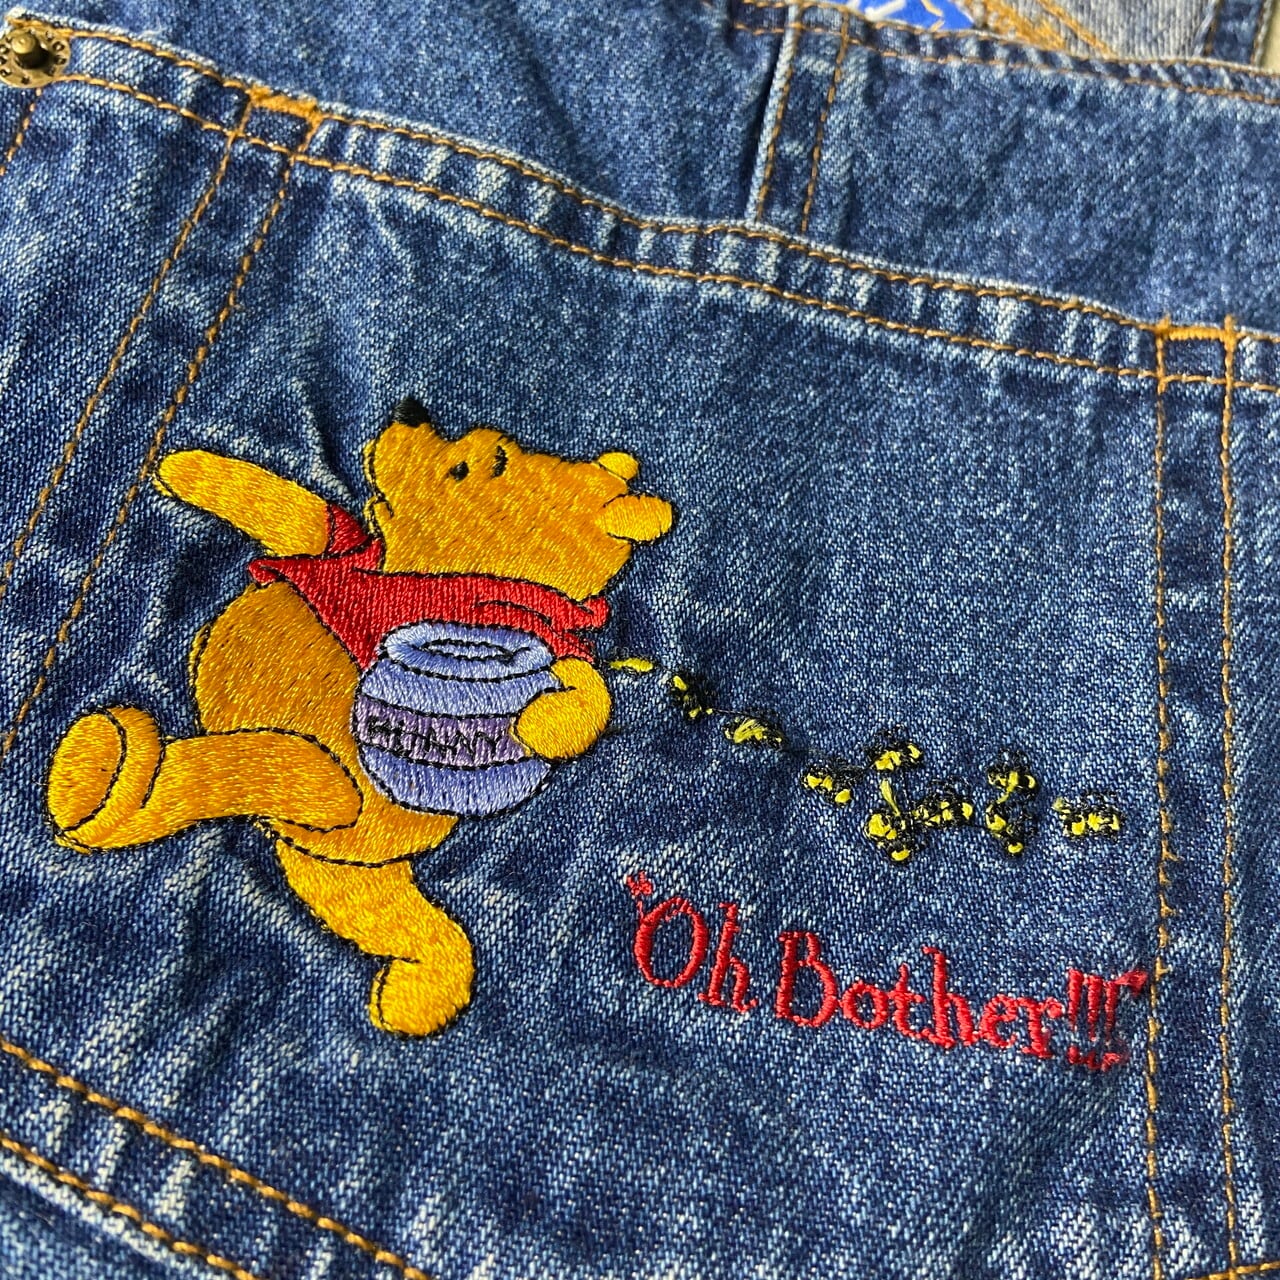 90年代 Pooh プーさん デニム オーバーオール 刺繍 キャラクター